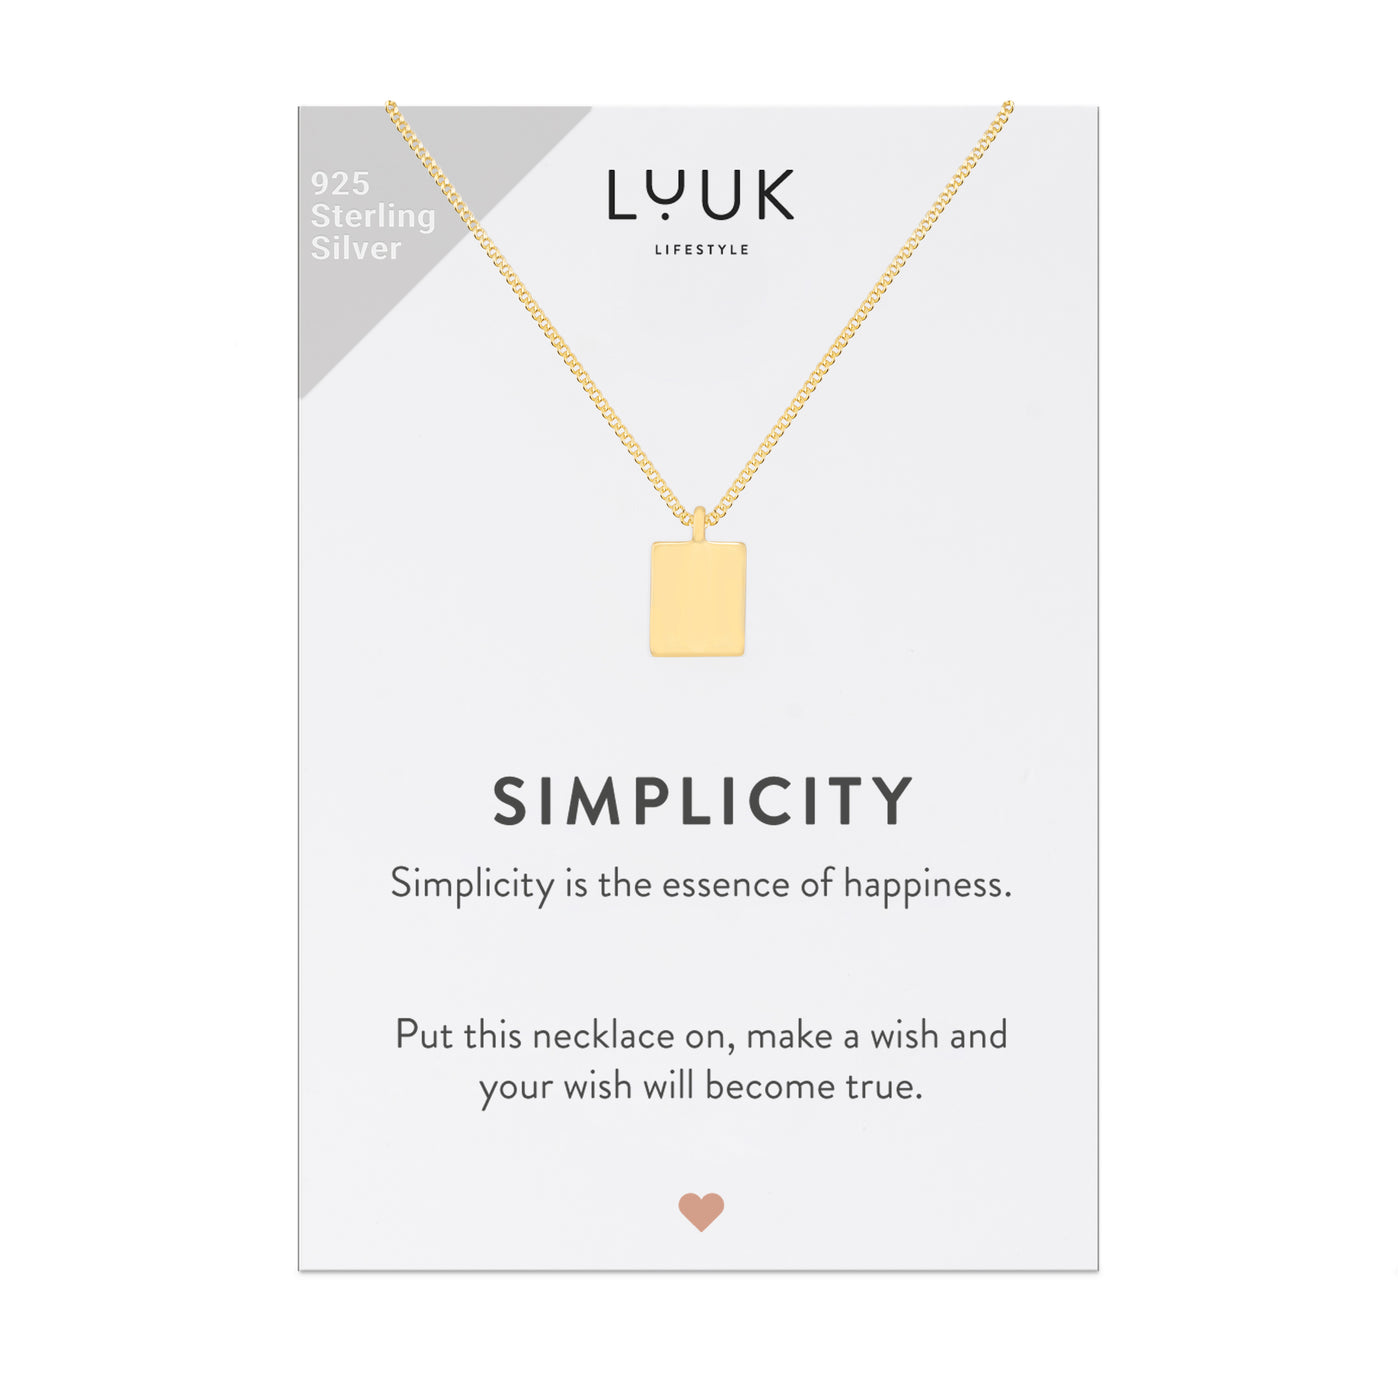 Goldene Halskette mit Quadrat Anhänger auf Simplicity Karte von der Brand Luuk Lifestyle